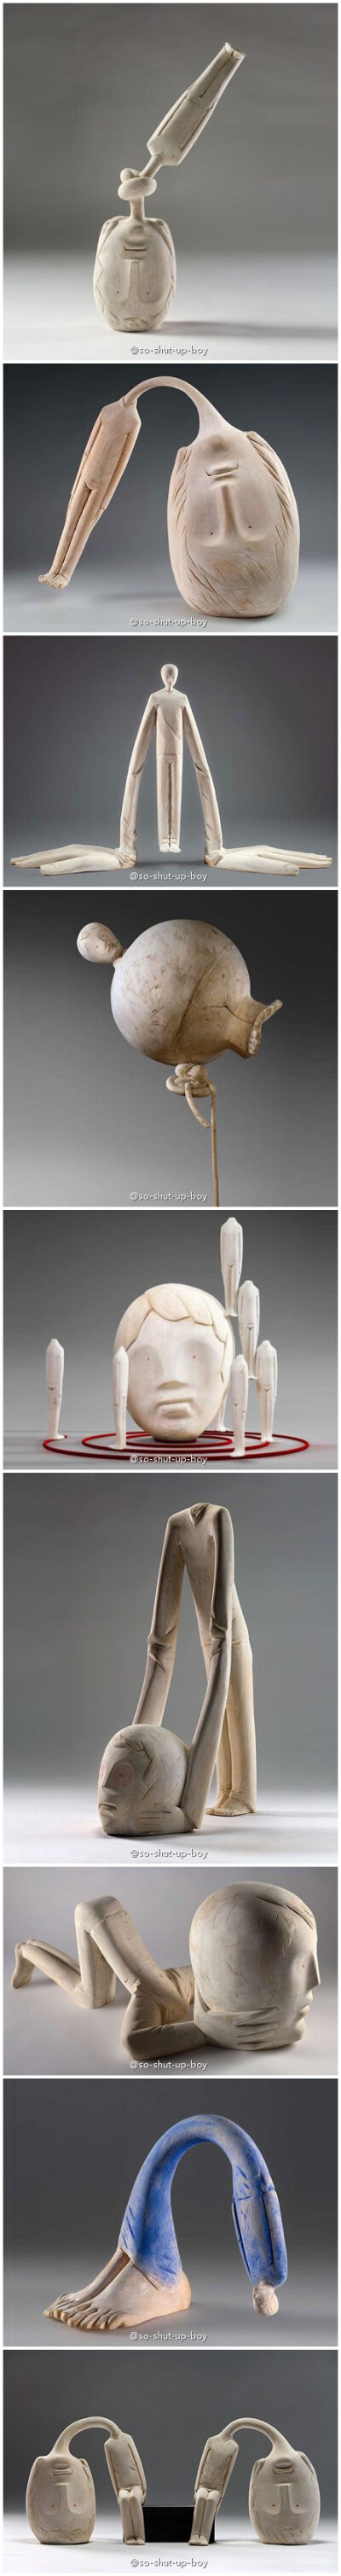 木雕。Ivan Lardschneider，意大雕塑家，出生于1976年，他的作品充满幽默感，总是想给观众惊喜，雕塑使用的材料大多使用白色或浅褐色椴木。